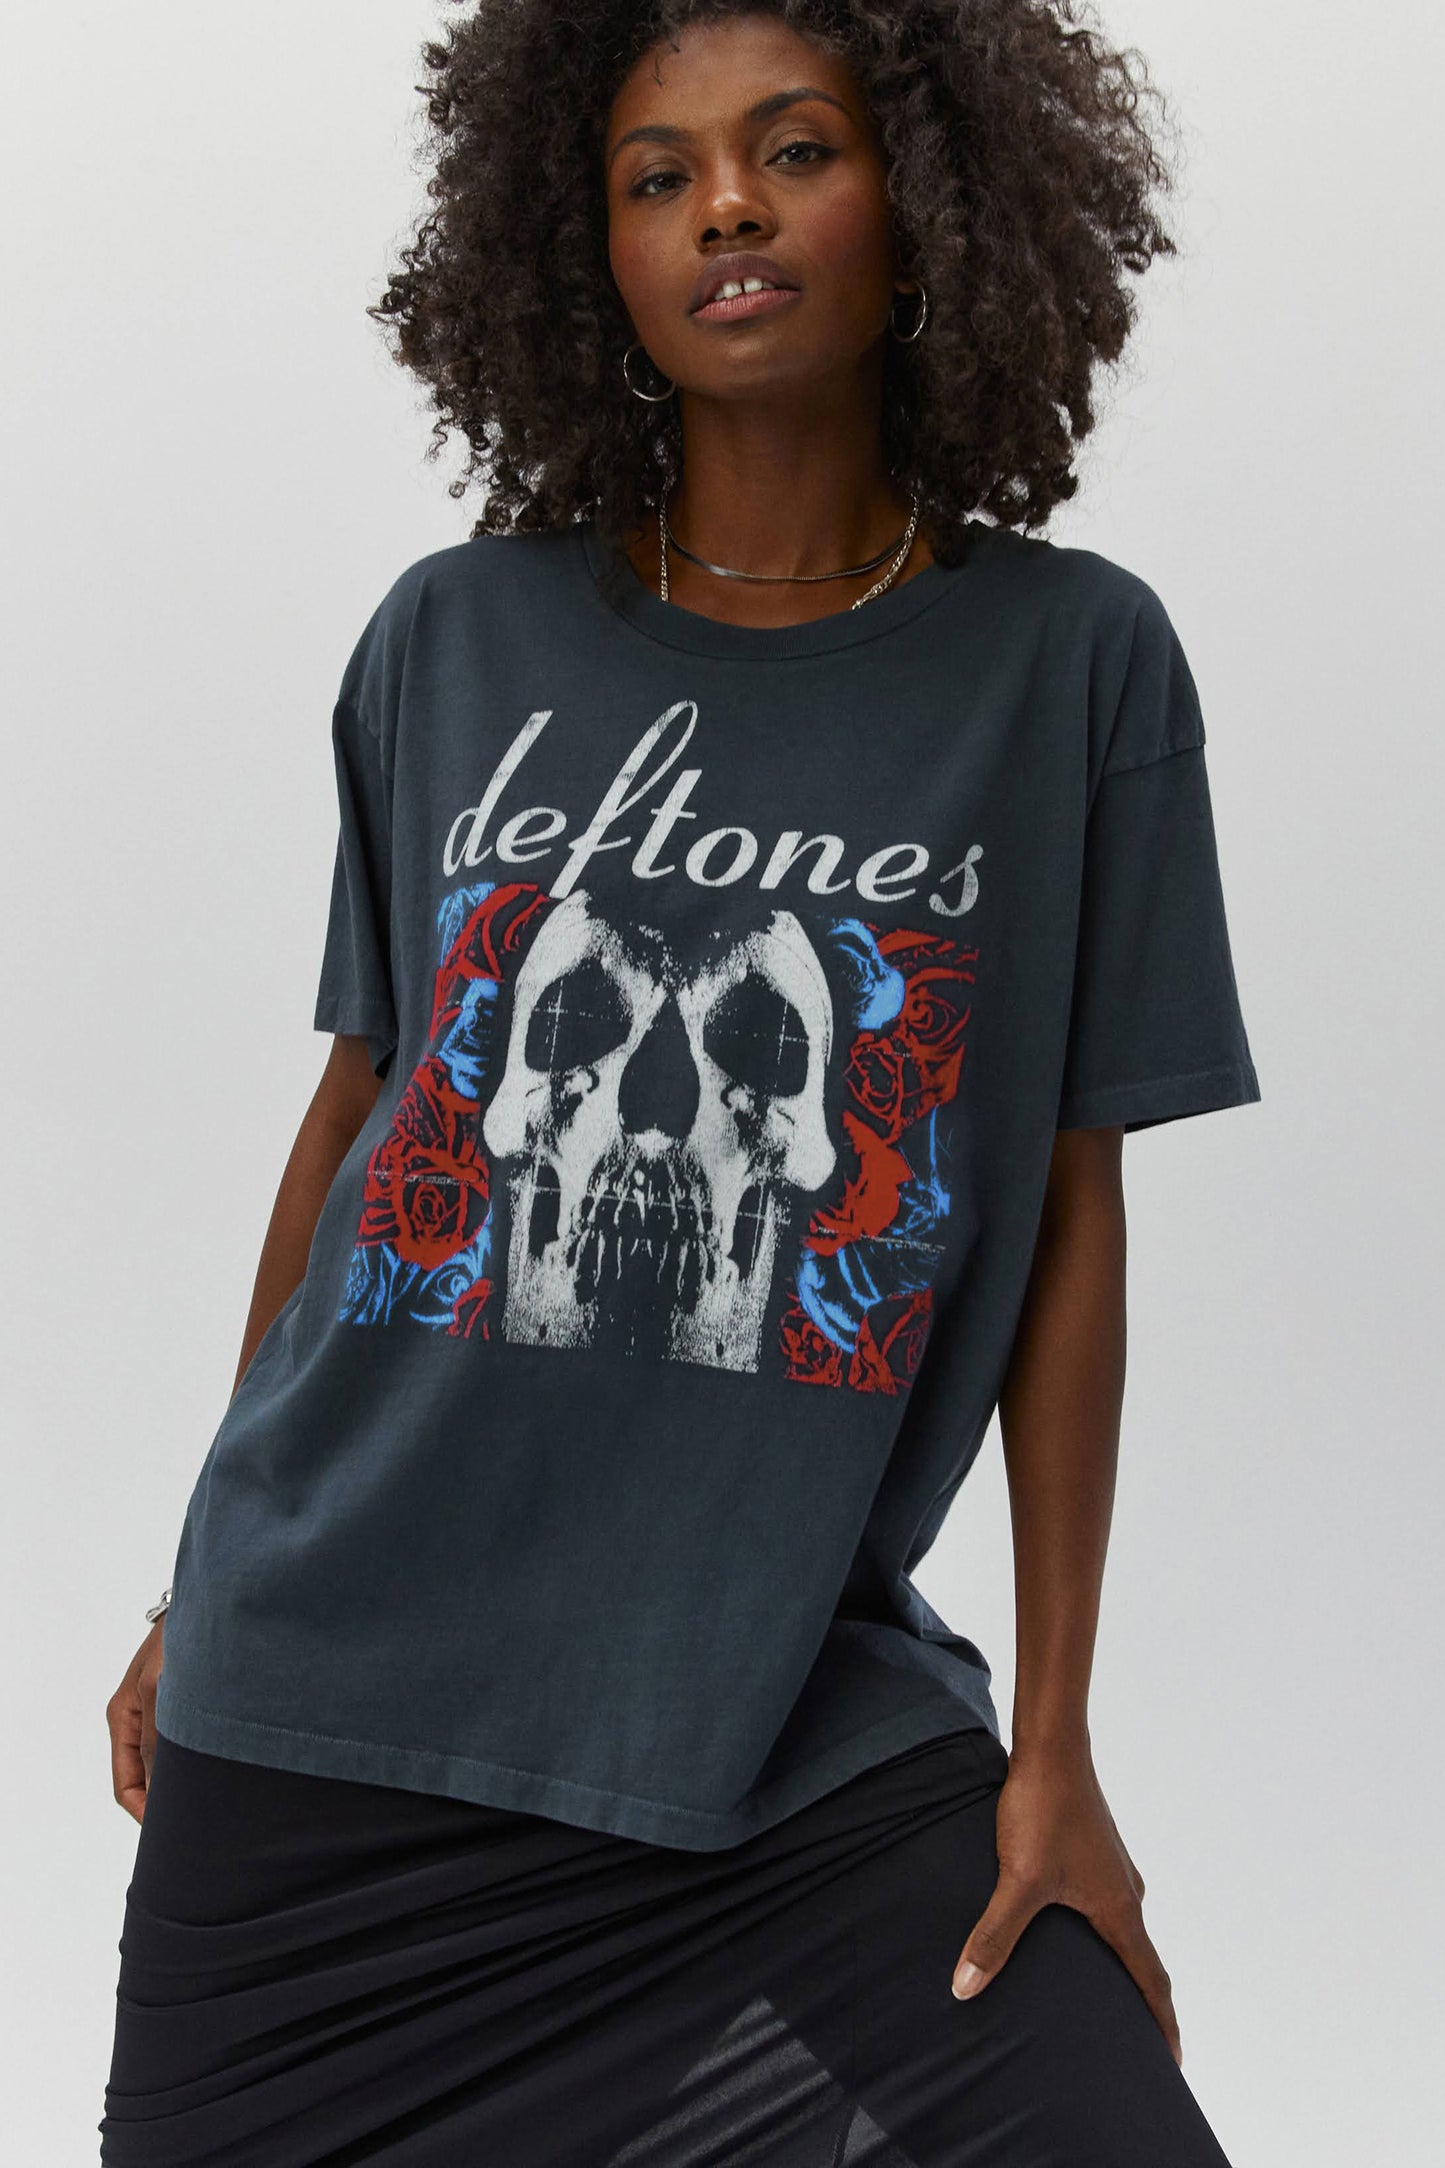 Deftones 20 Years Merch Tee